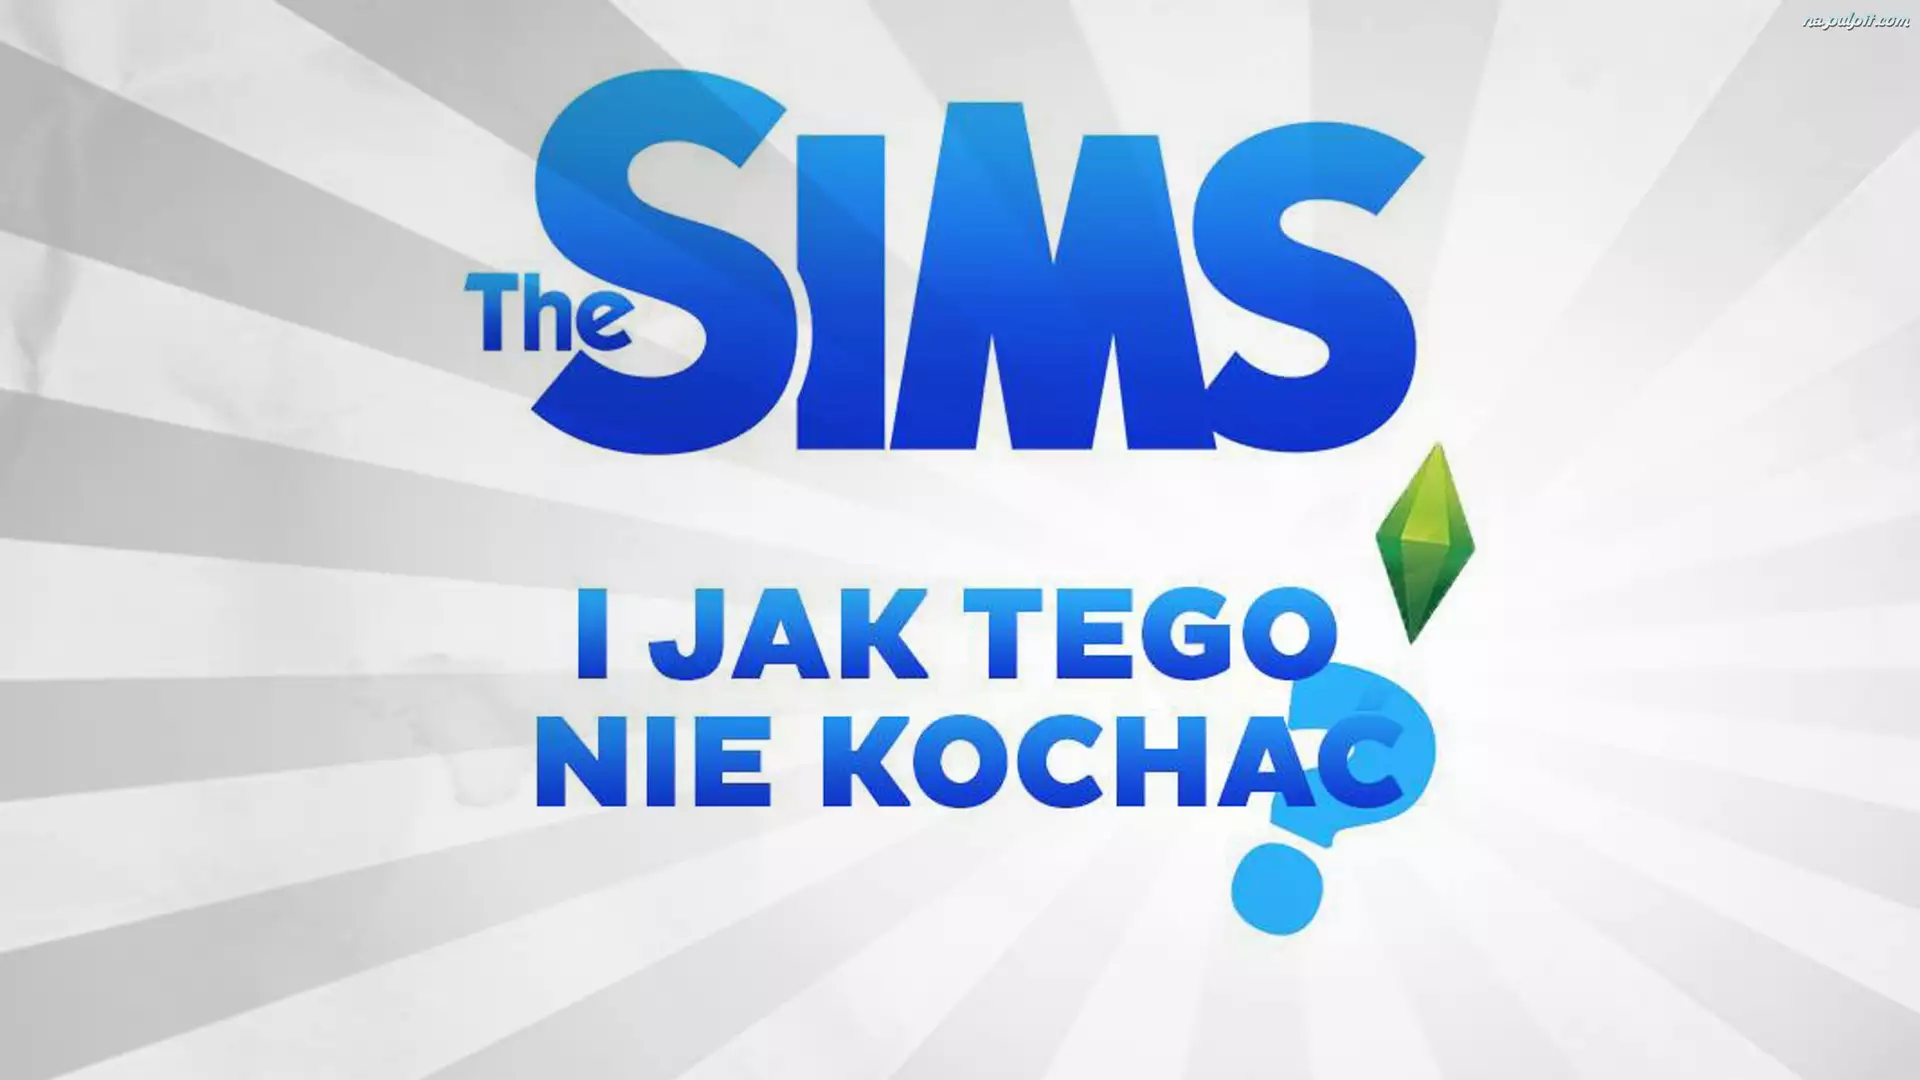 I jak tego nie kochać, The Sims